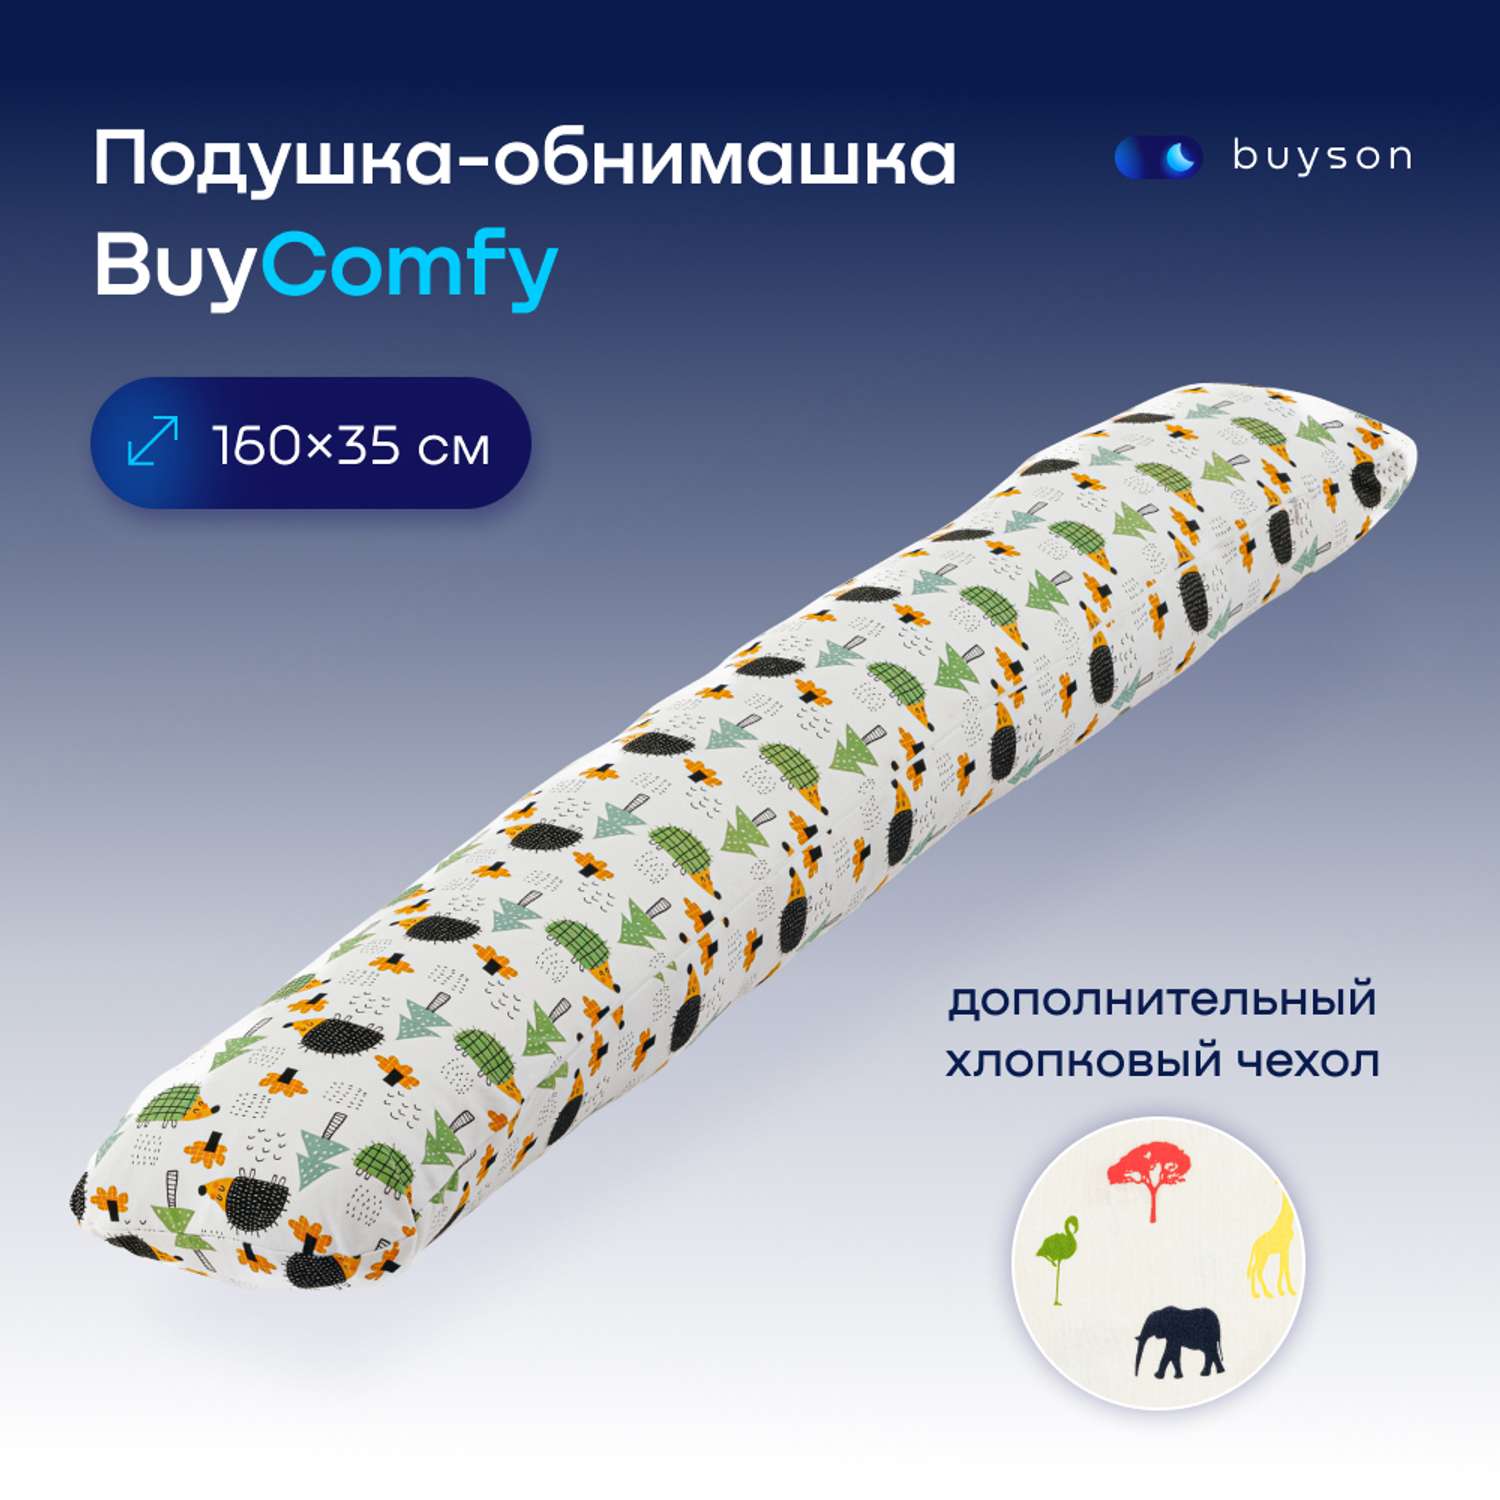 Подушка для беременных и детей buyson BuyComfy 2 чехла Forest и Africa - фото 1